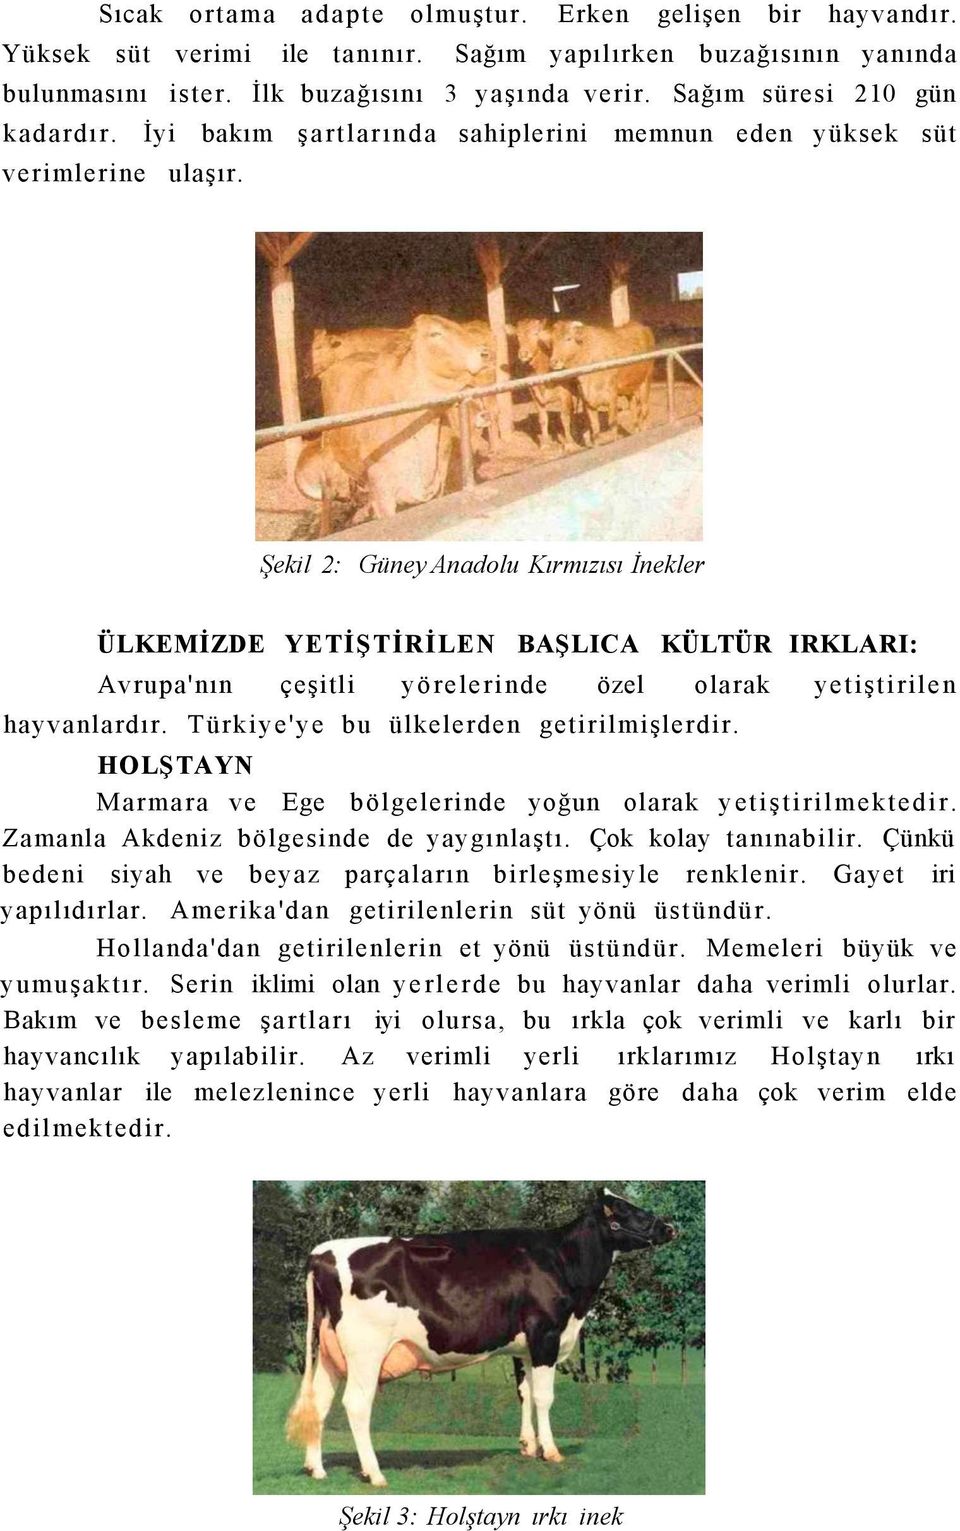 Şekil 2: Güney Anadolu Kırmızısı İnekler ÜLKEMİZDE YETİŞTİRİLEN BAŞLICA KÜLTÜR IRKLARI: Avrupa'nın çeşitli yörelerinde özel olarak yetiştirilen hayvanlardır. Türkiye'ye bu ülkelerden getirilmişlerdir.